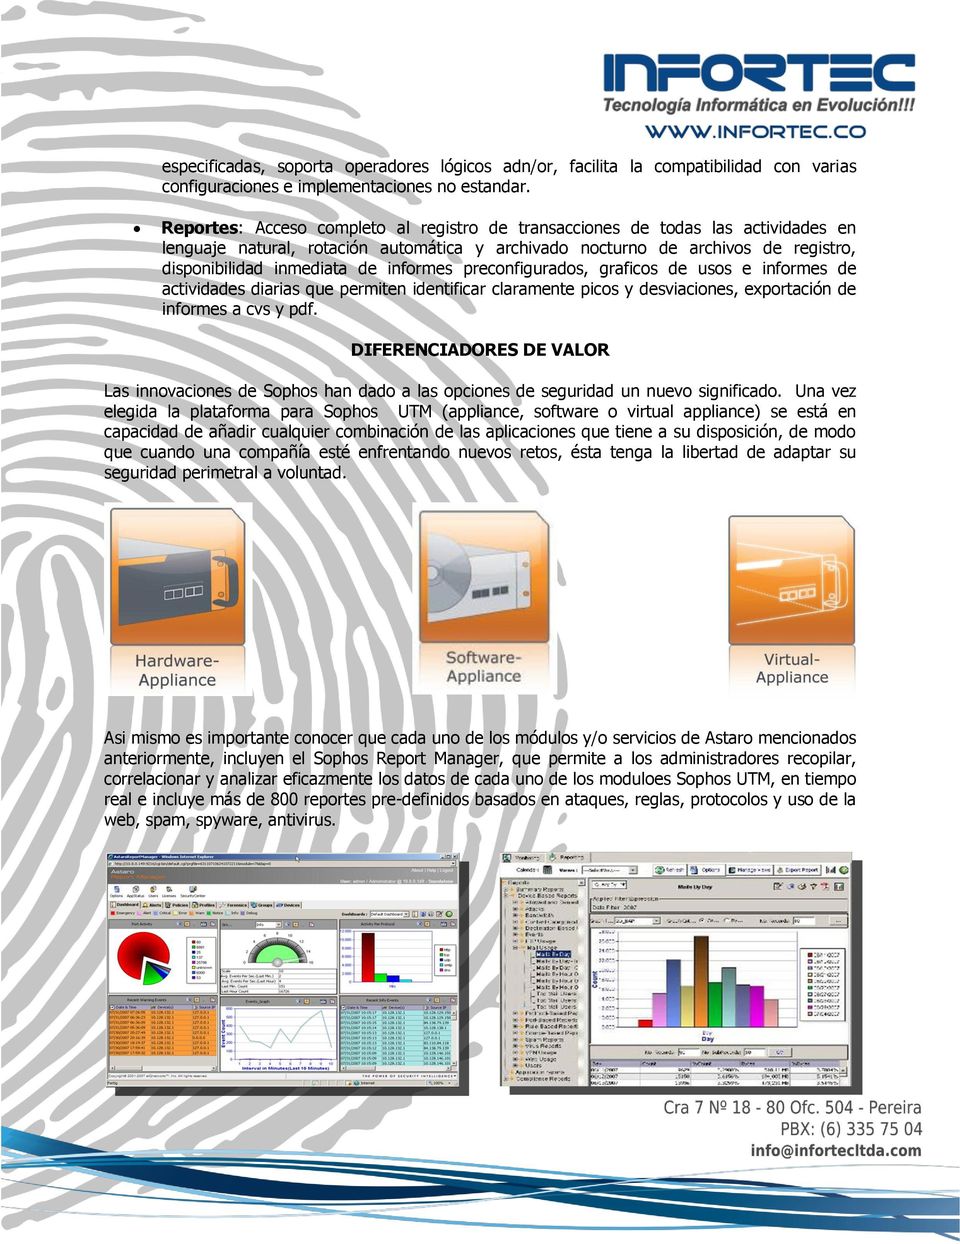 informes preconfigurados, graficos de usos e informes de actividades diarias que permiten identificar claramente picos y desviaciones, exportación de informes a cvs y pdf.